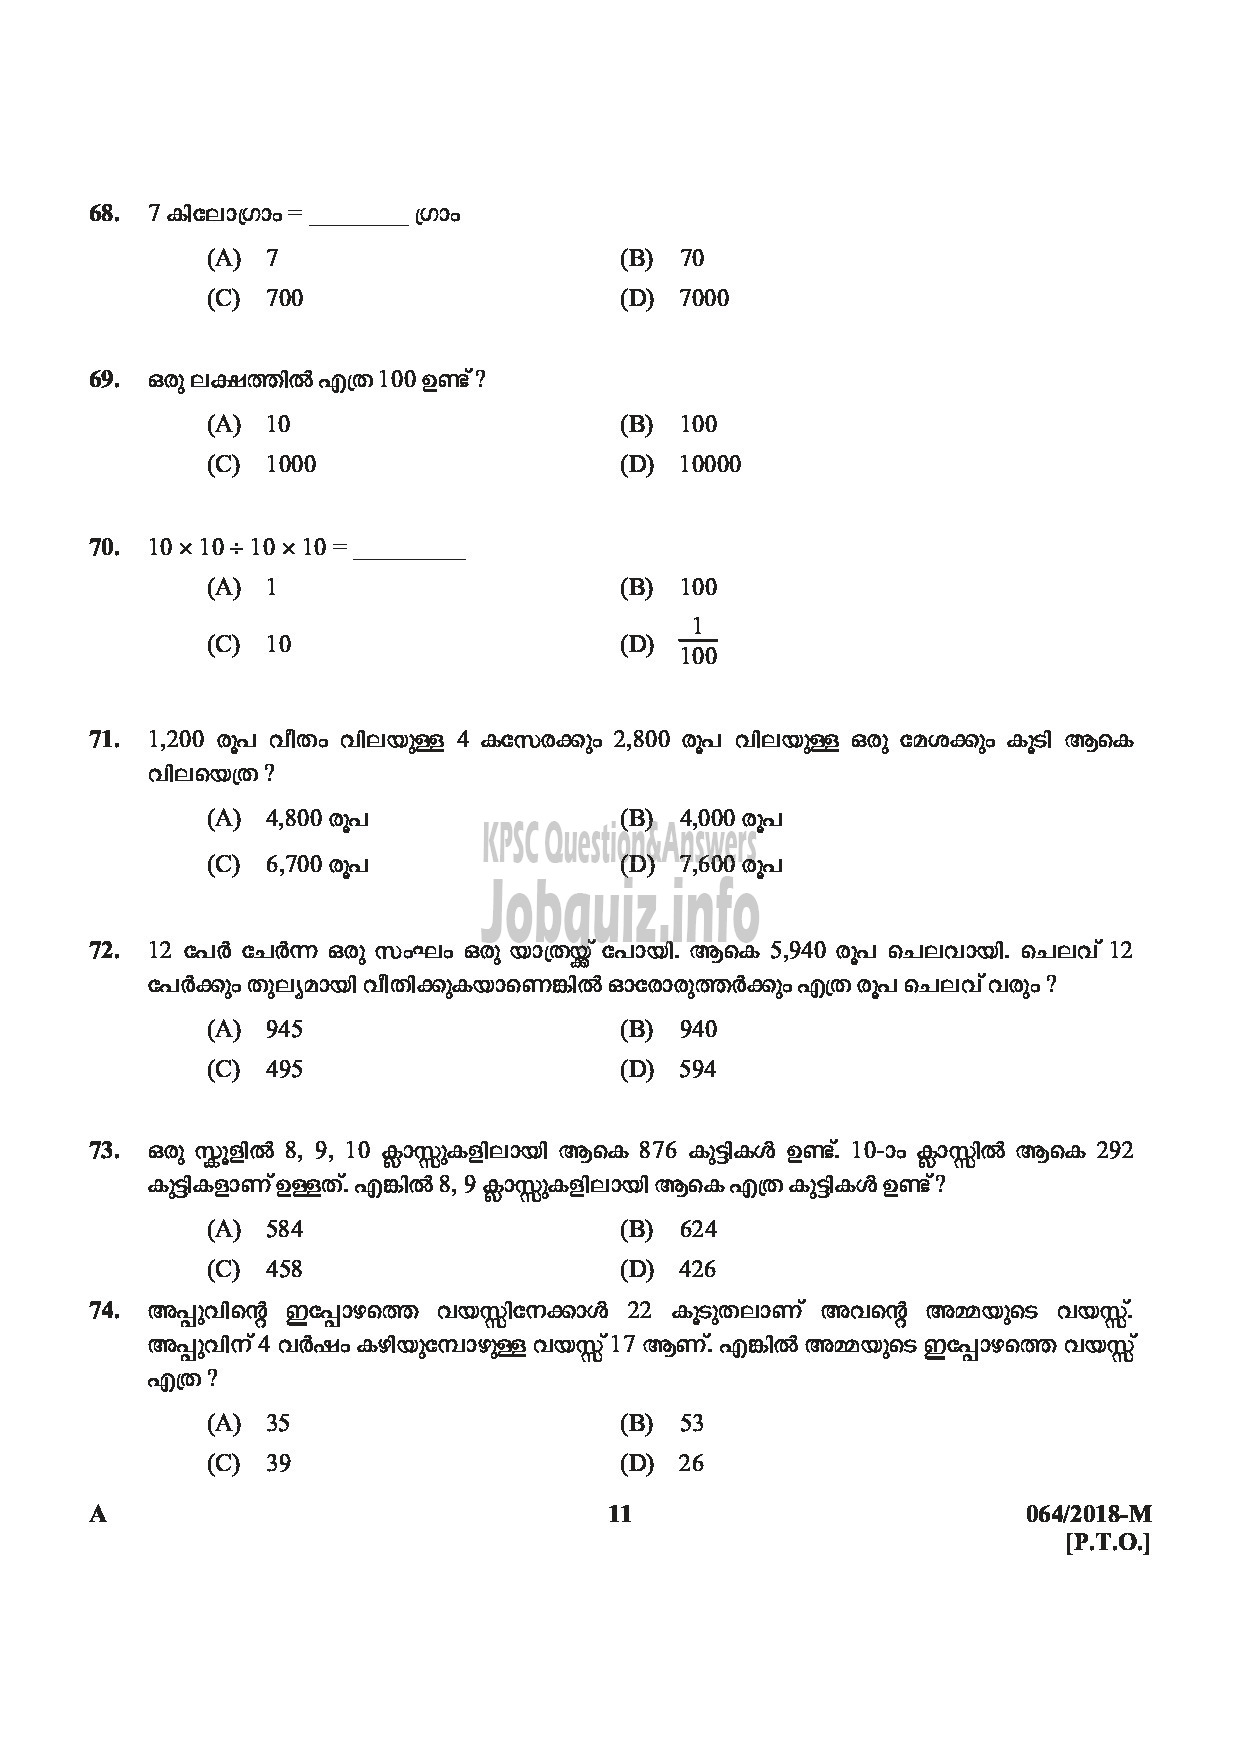 Kerala PSC Question Paper - LAST GRADE SERVANTS EXSERVICEMAN NCC SAINIK WELFARE-11